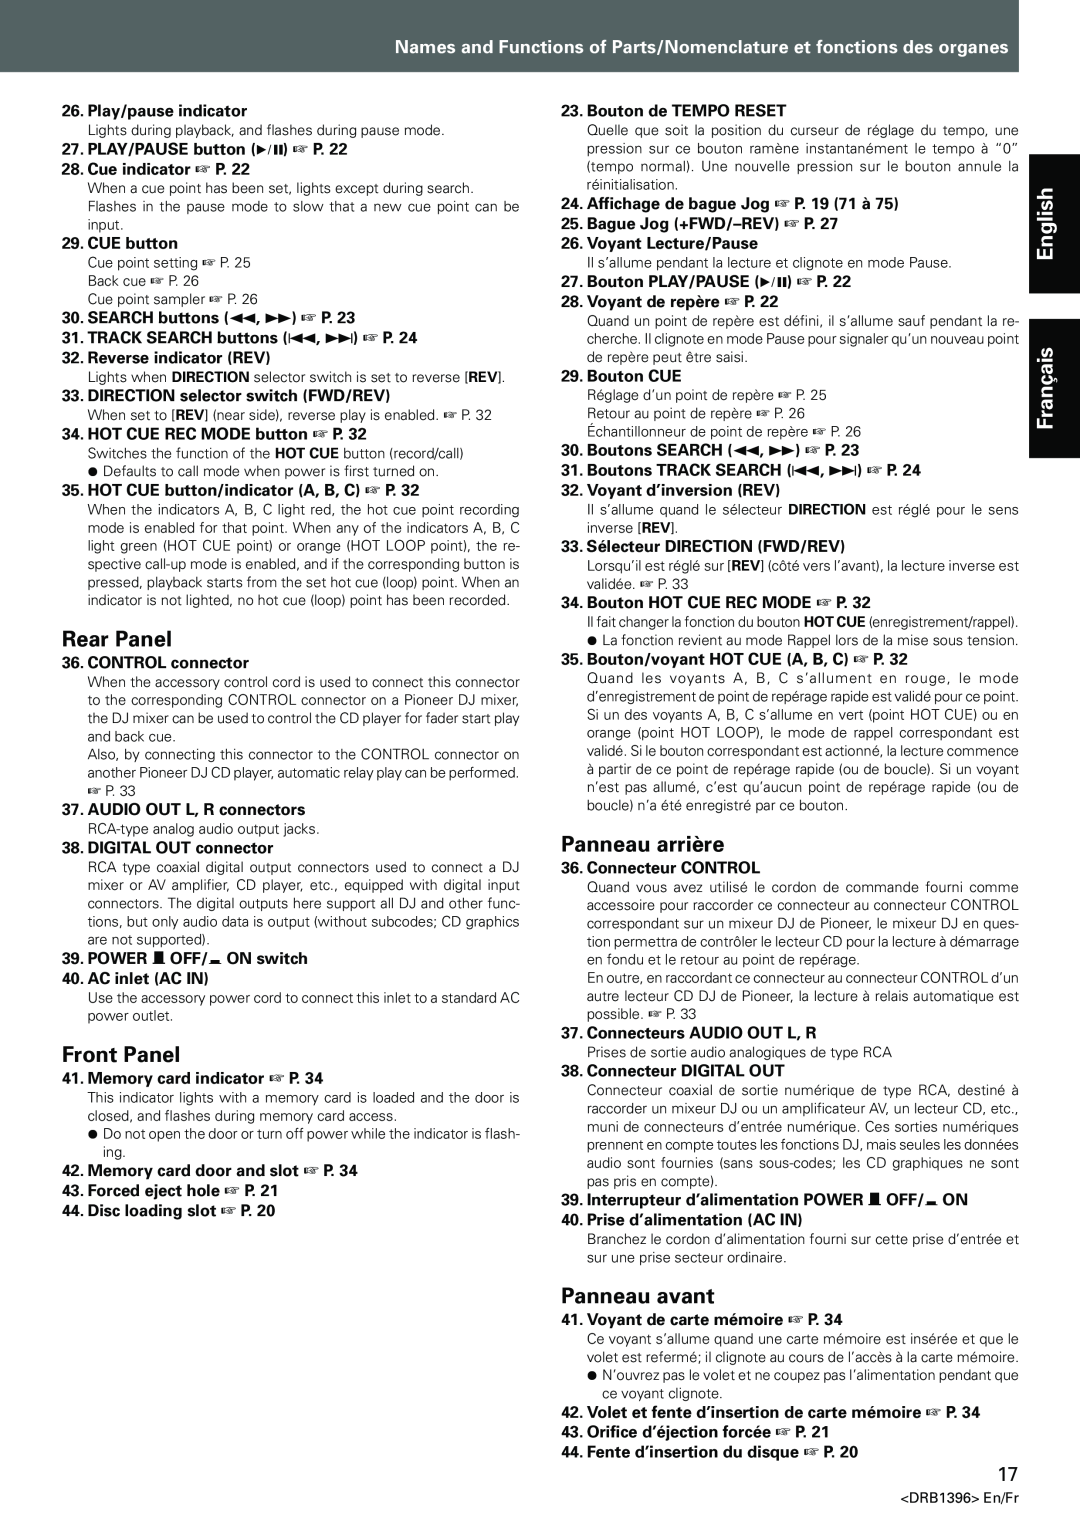 Pioneer CDJ-1000MK3 manual Rear Panel, Front Panel, Panneau arrière, Panneau avant, English Français 